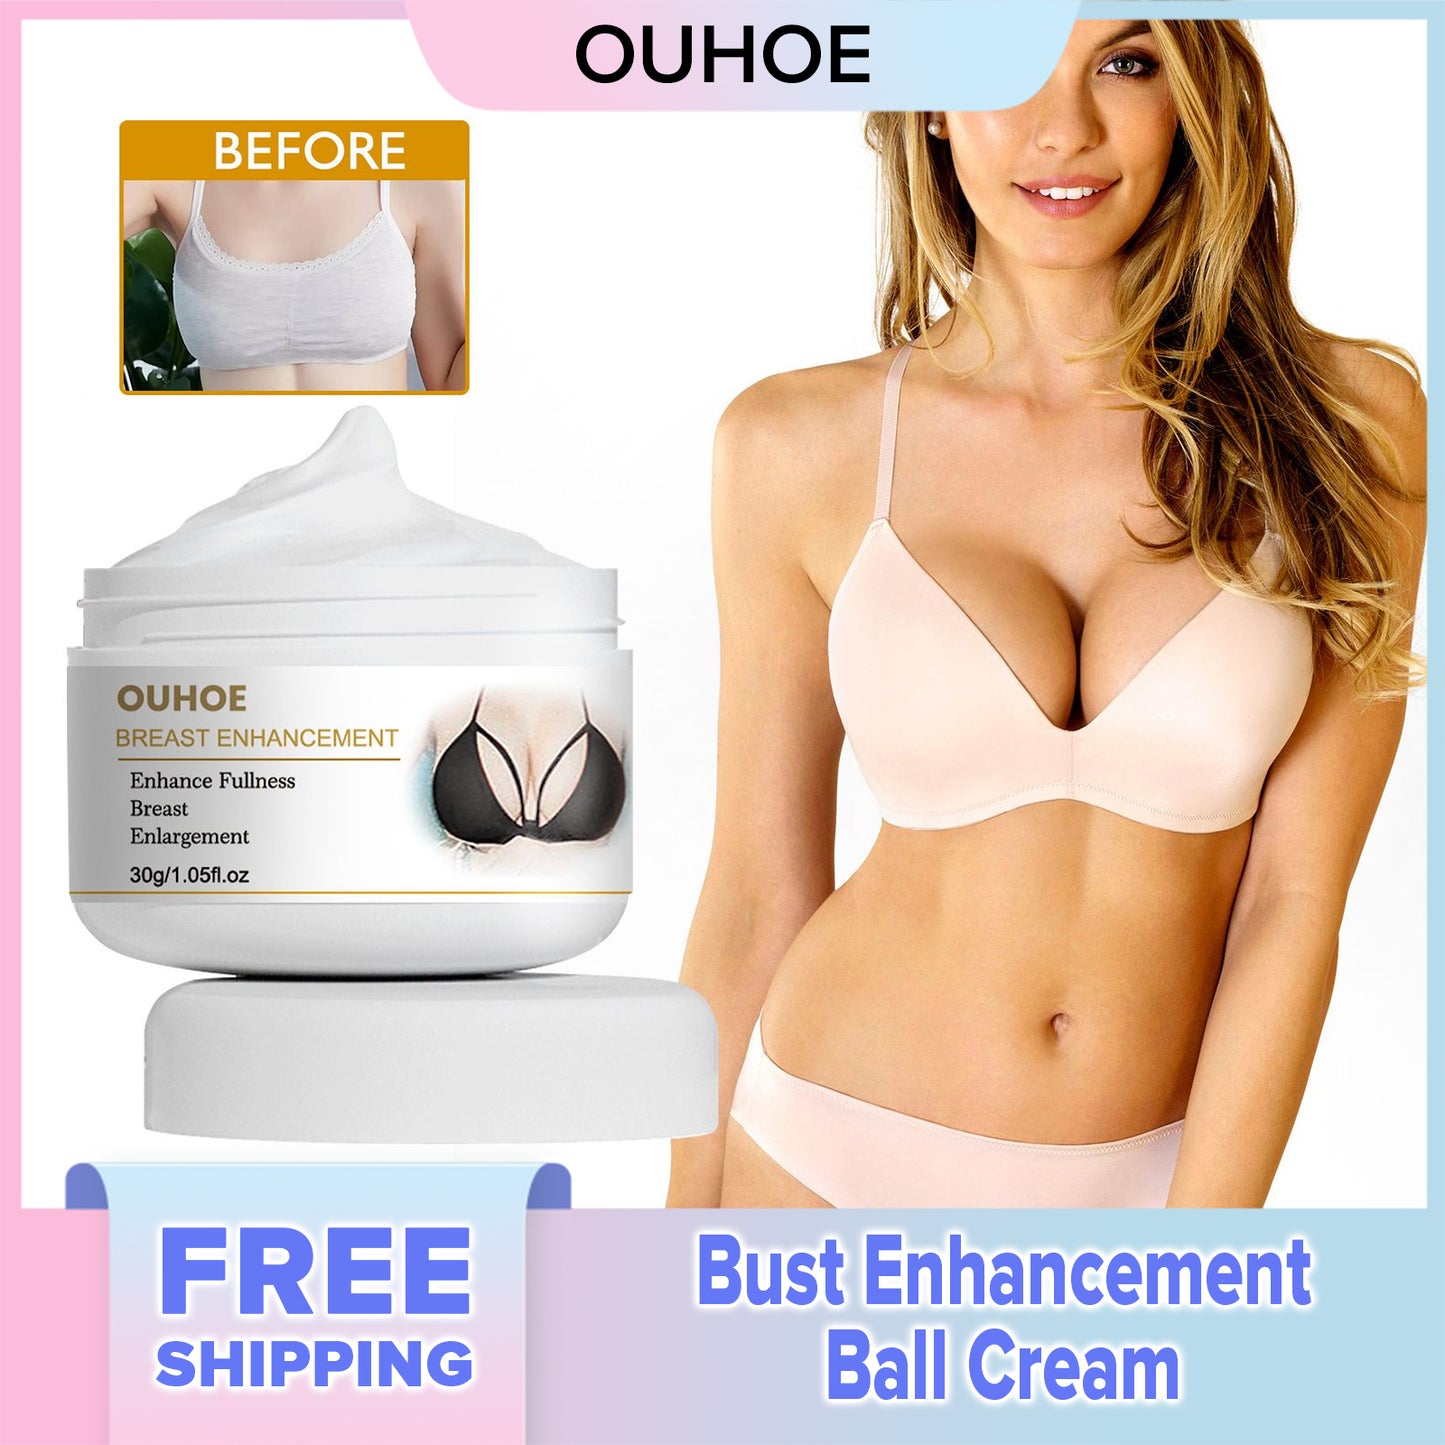 OUHOE Bust Enhancement Ball Cream Firming Boob Fullness Beauty